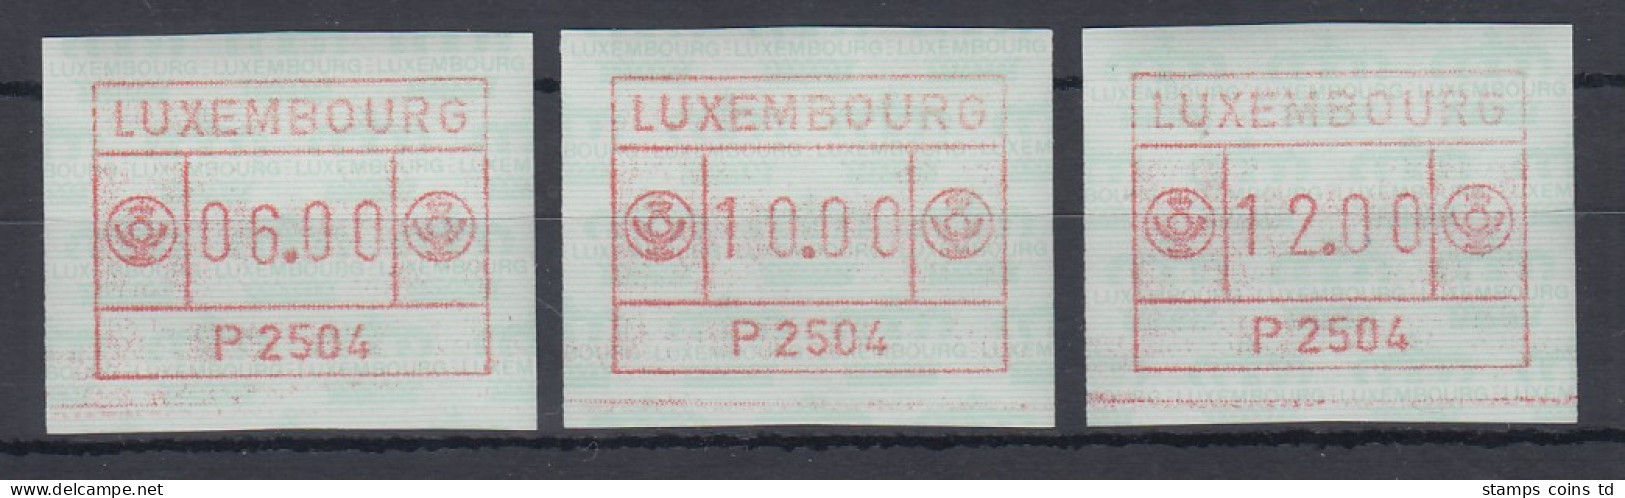 Luxemburg ATM P2504 Tastensatz 6-10-12 ** - Postage Labels